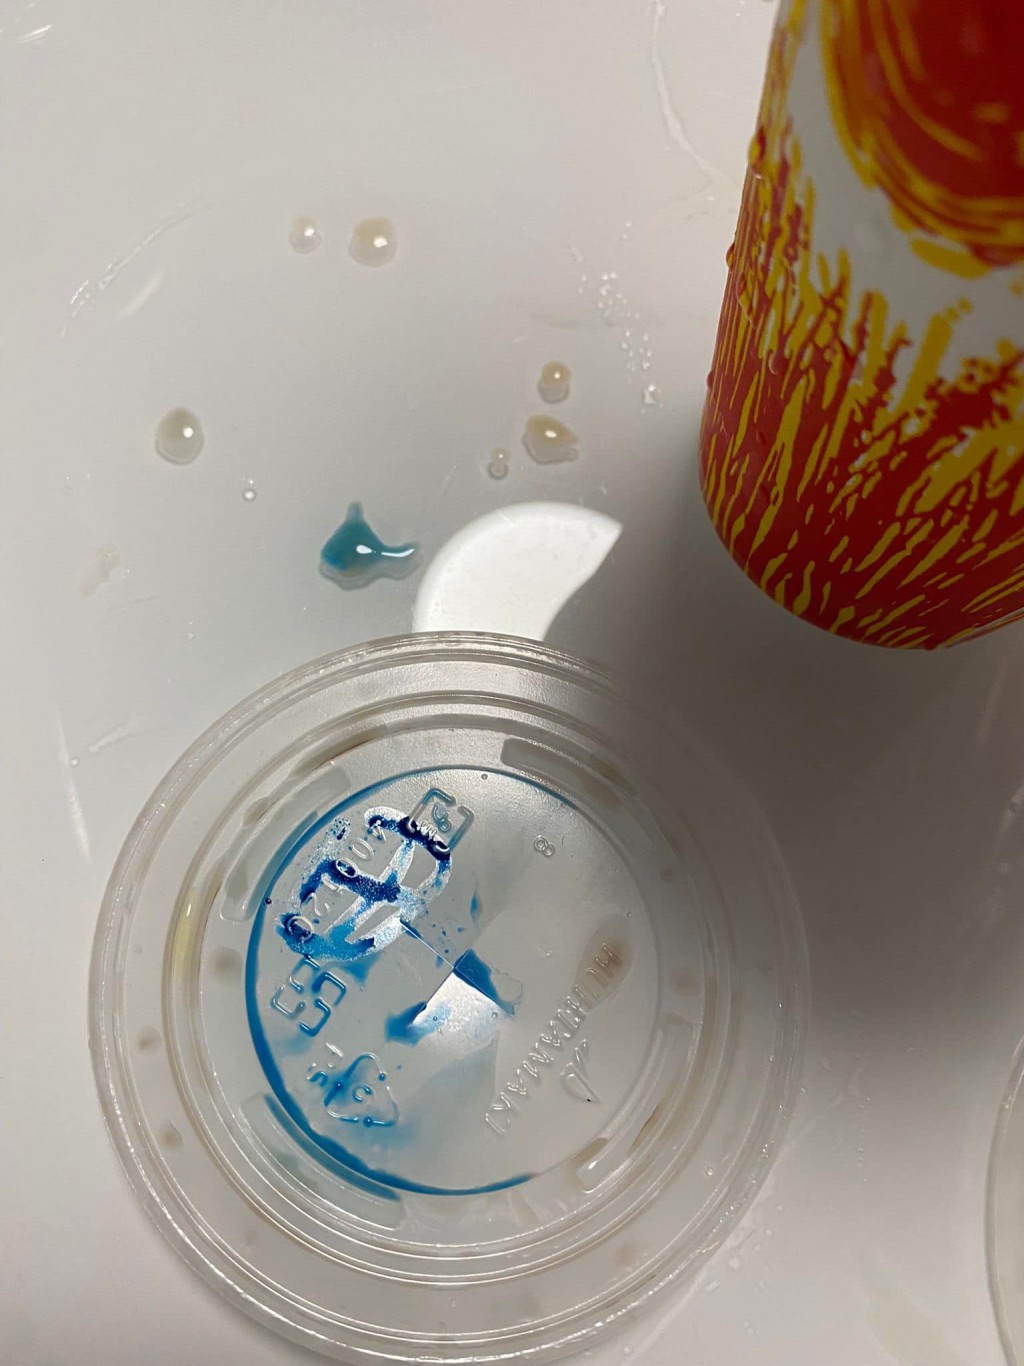 有市民发现外卖印品杯盖上标示的墨水，溶在了饮品之中。群组将军澳主场网民图片